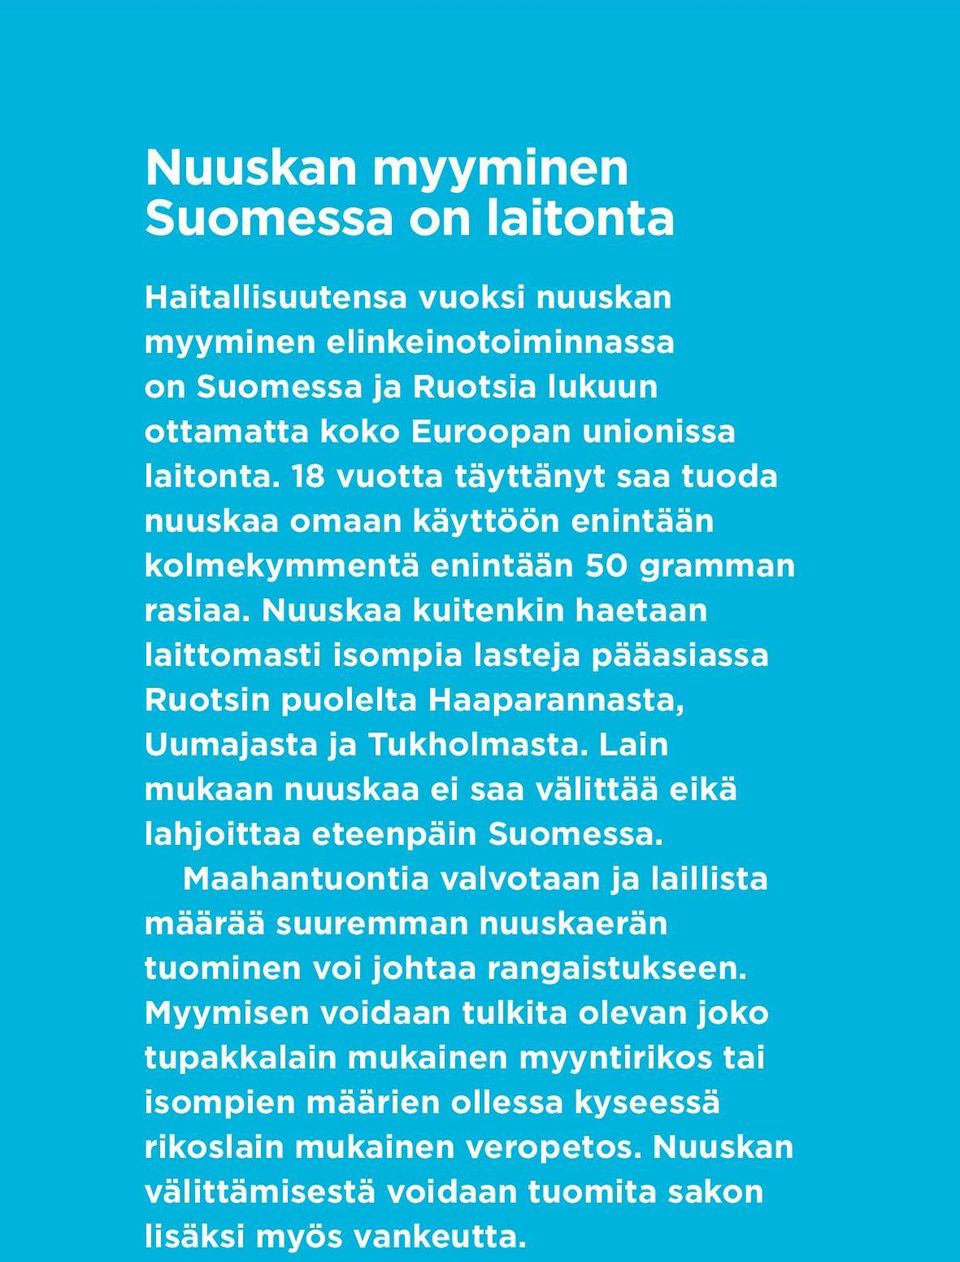 Nuuskaa kuitenkin haetaan laittomasti isompia lasteja pääasiassa Ruotsin puolelta Haaparannasta, Uumajasta ja Tukholmasta. Lain mukaan nuuskaa ei saa välittää eikä lahjoittaa eteenpäin Suomessa.